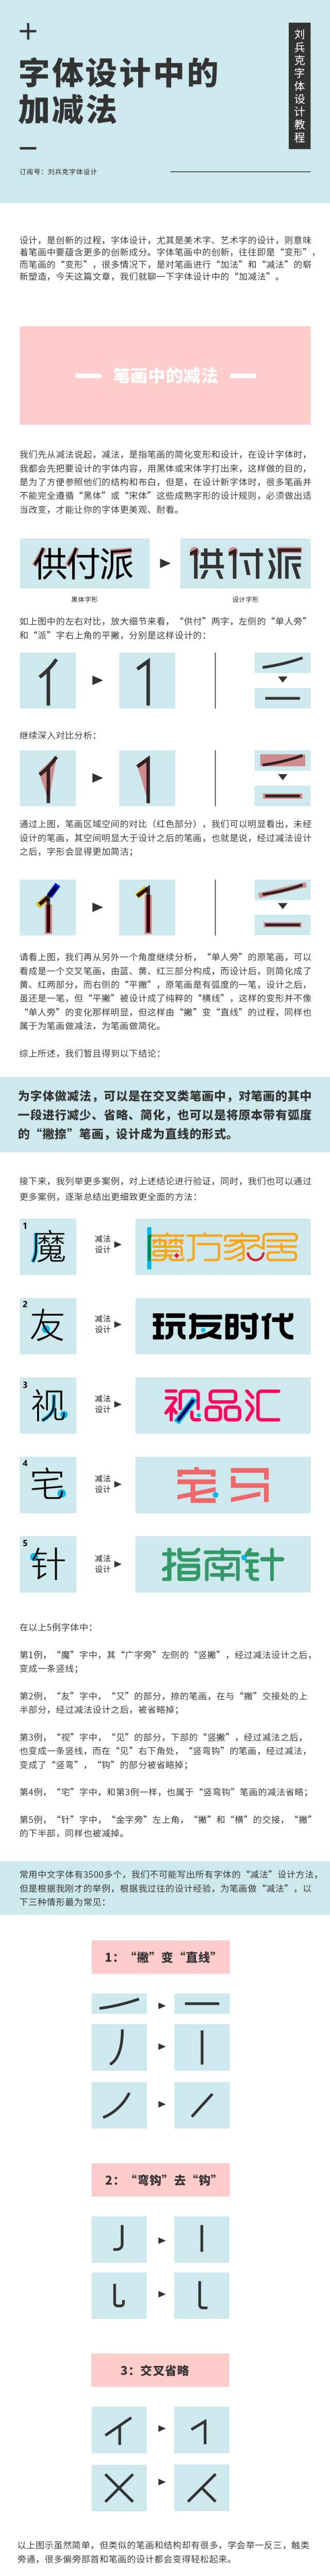 中文字体设计中的加减技巧详解